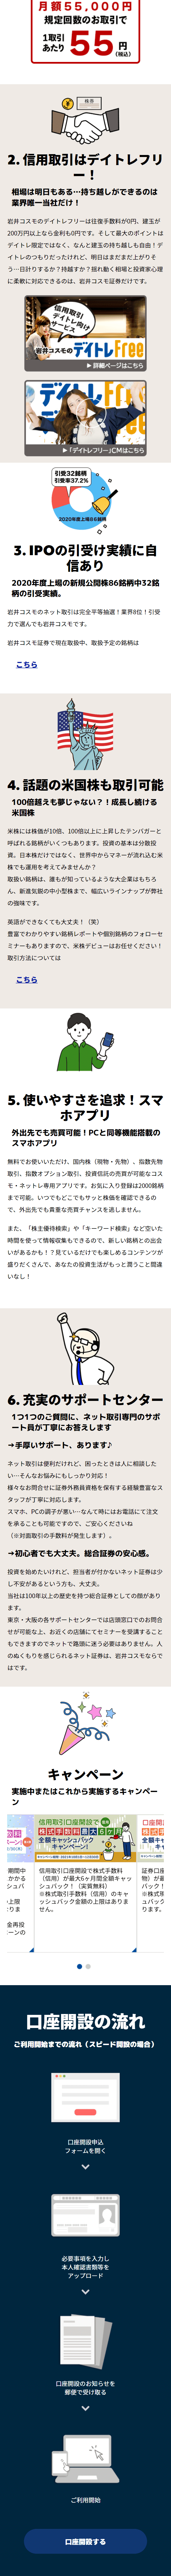 岩井コスモ証券ネット取引_sp_2